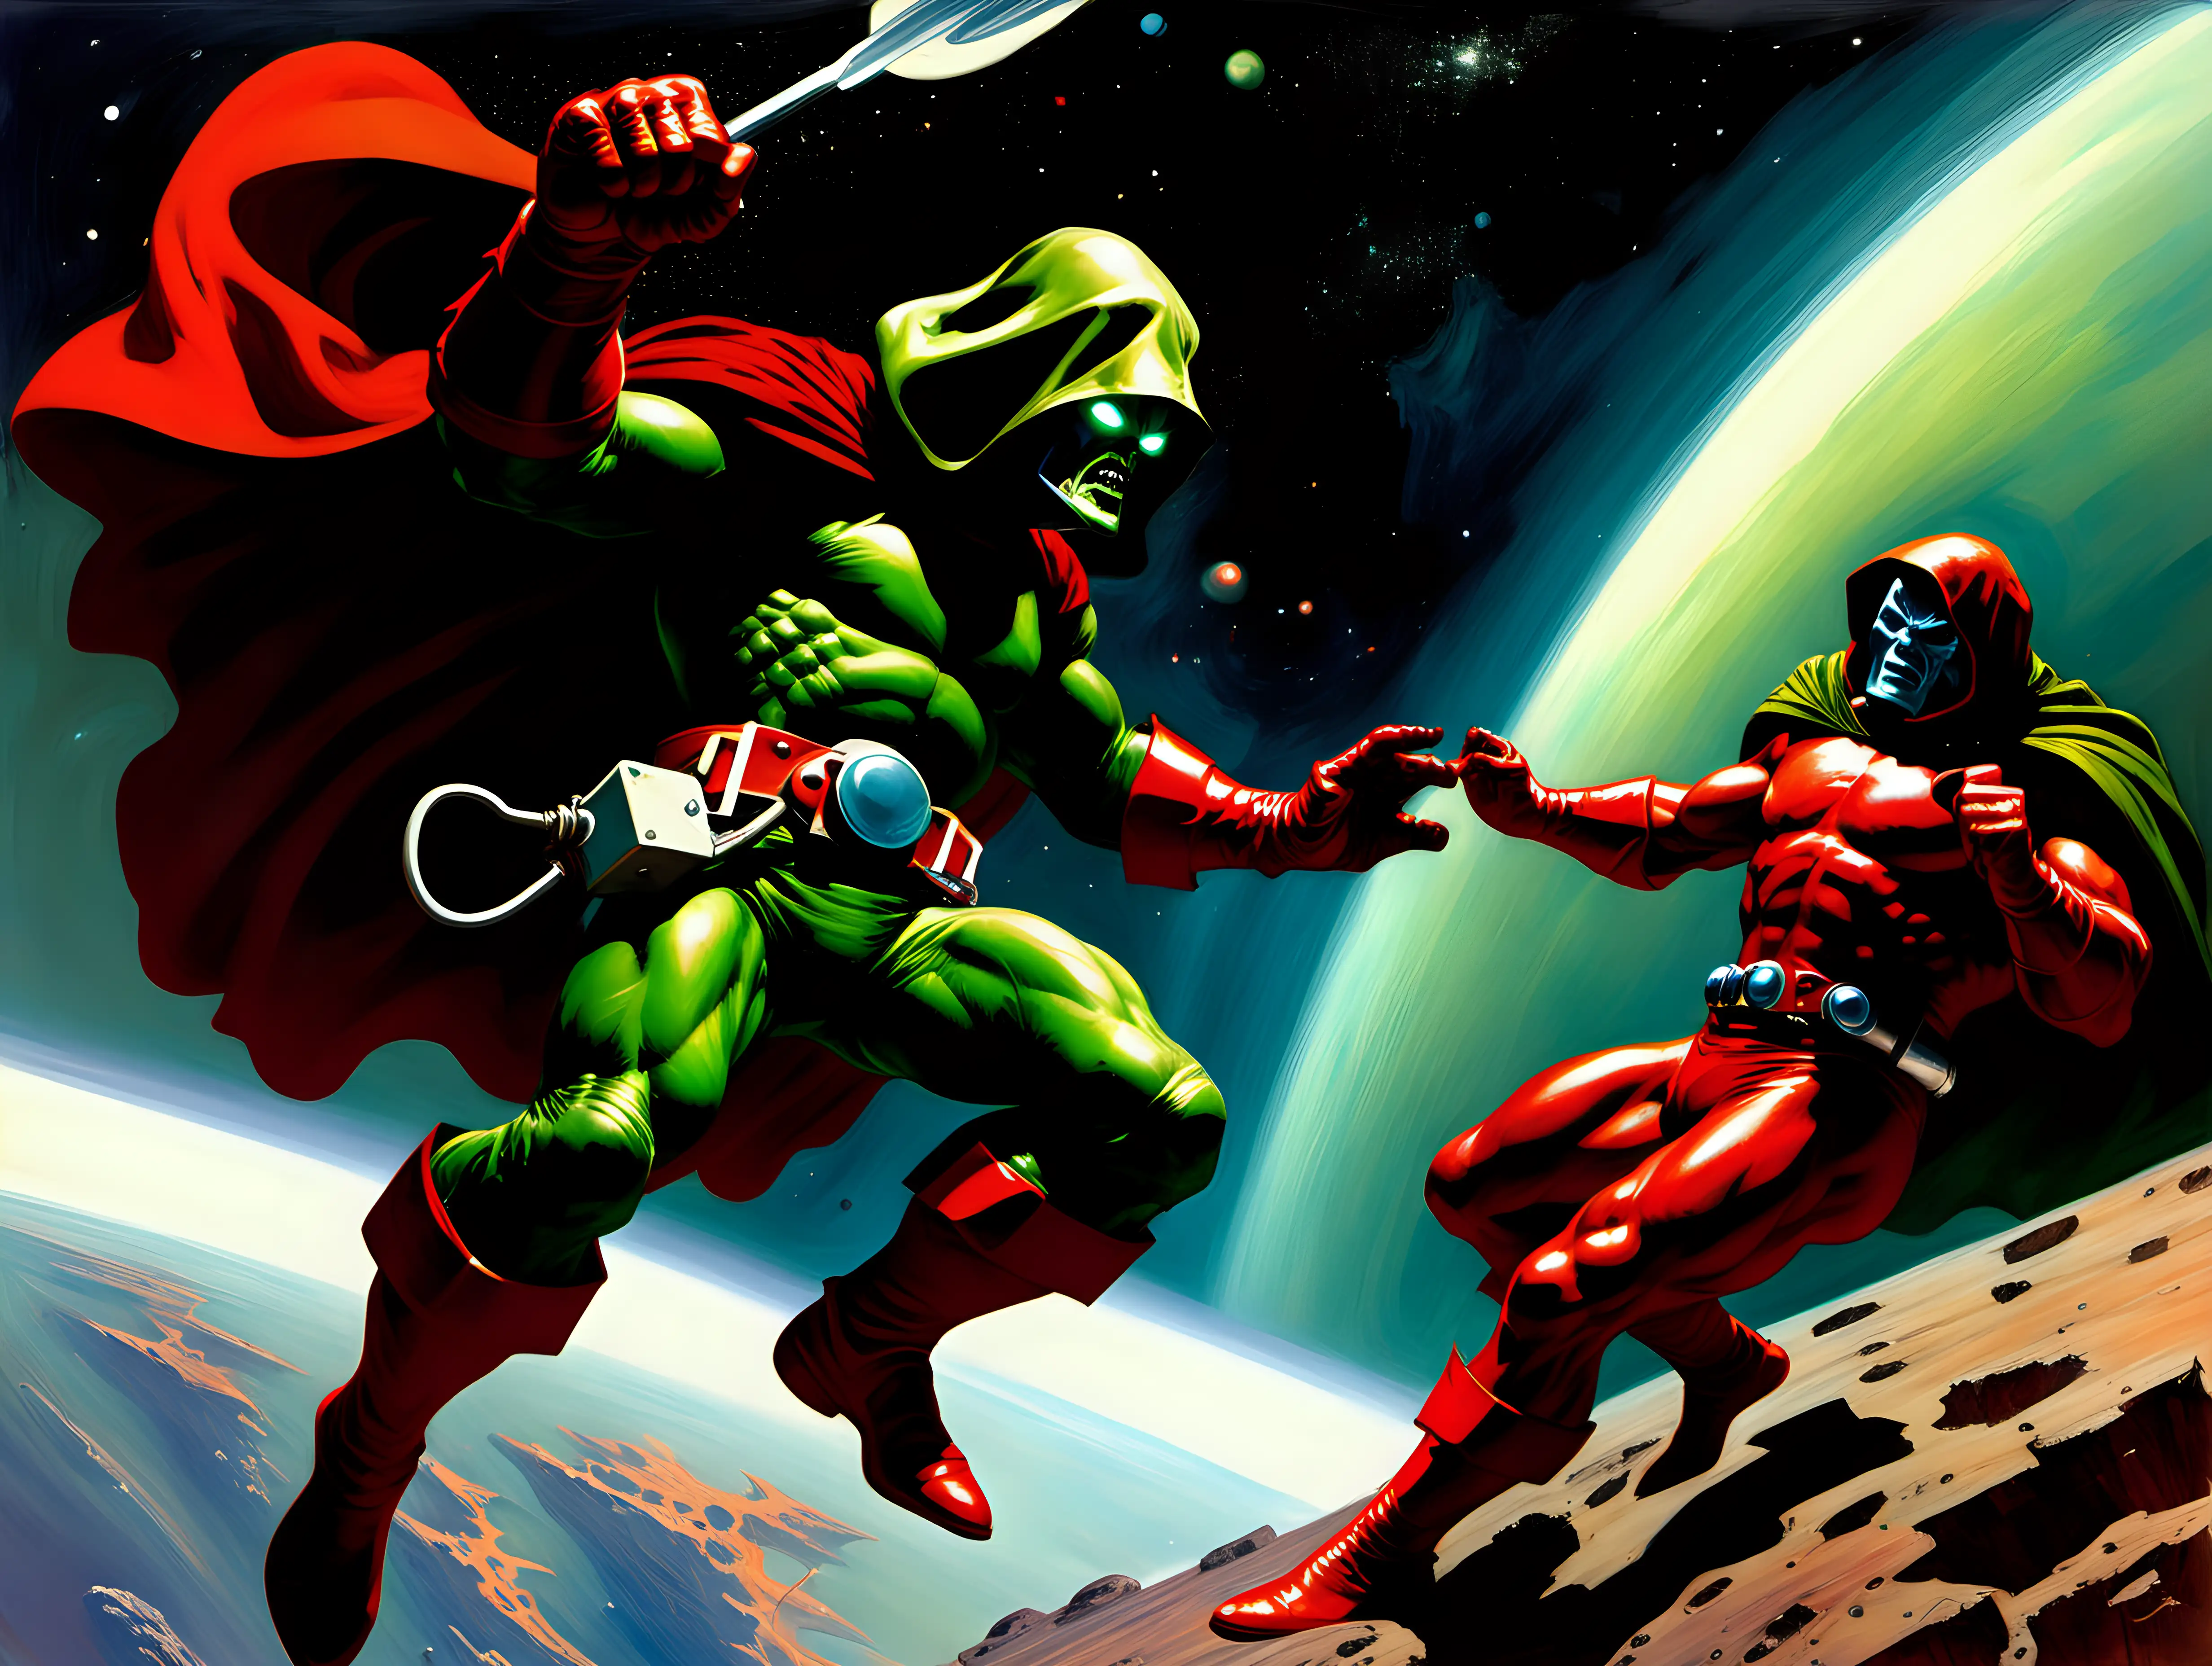 Epic Space Battle Daredevil vs Doctor Doom in Frank Frazetta Style